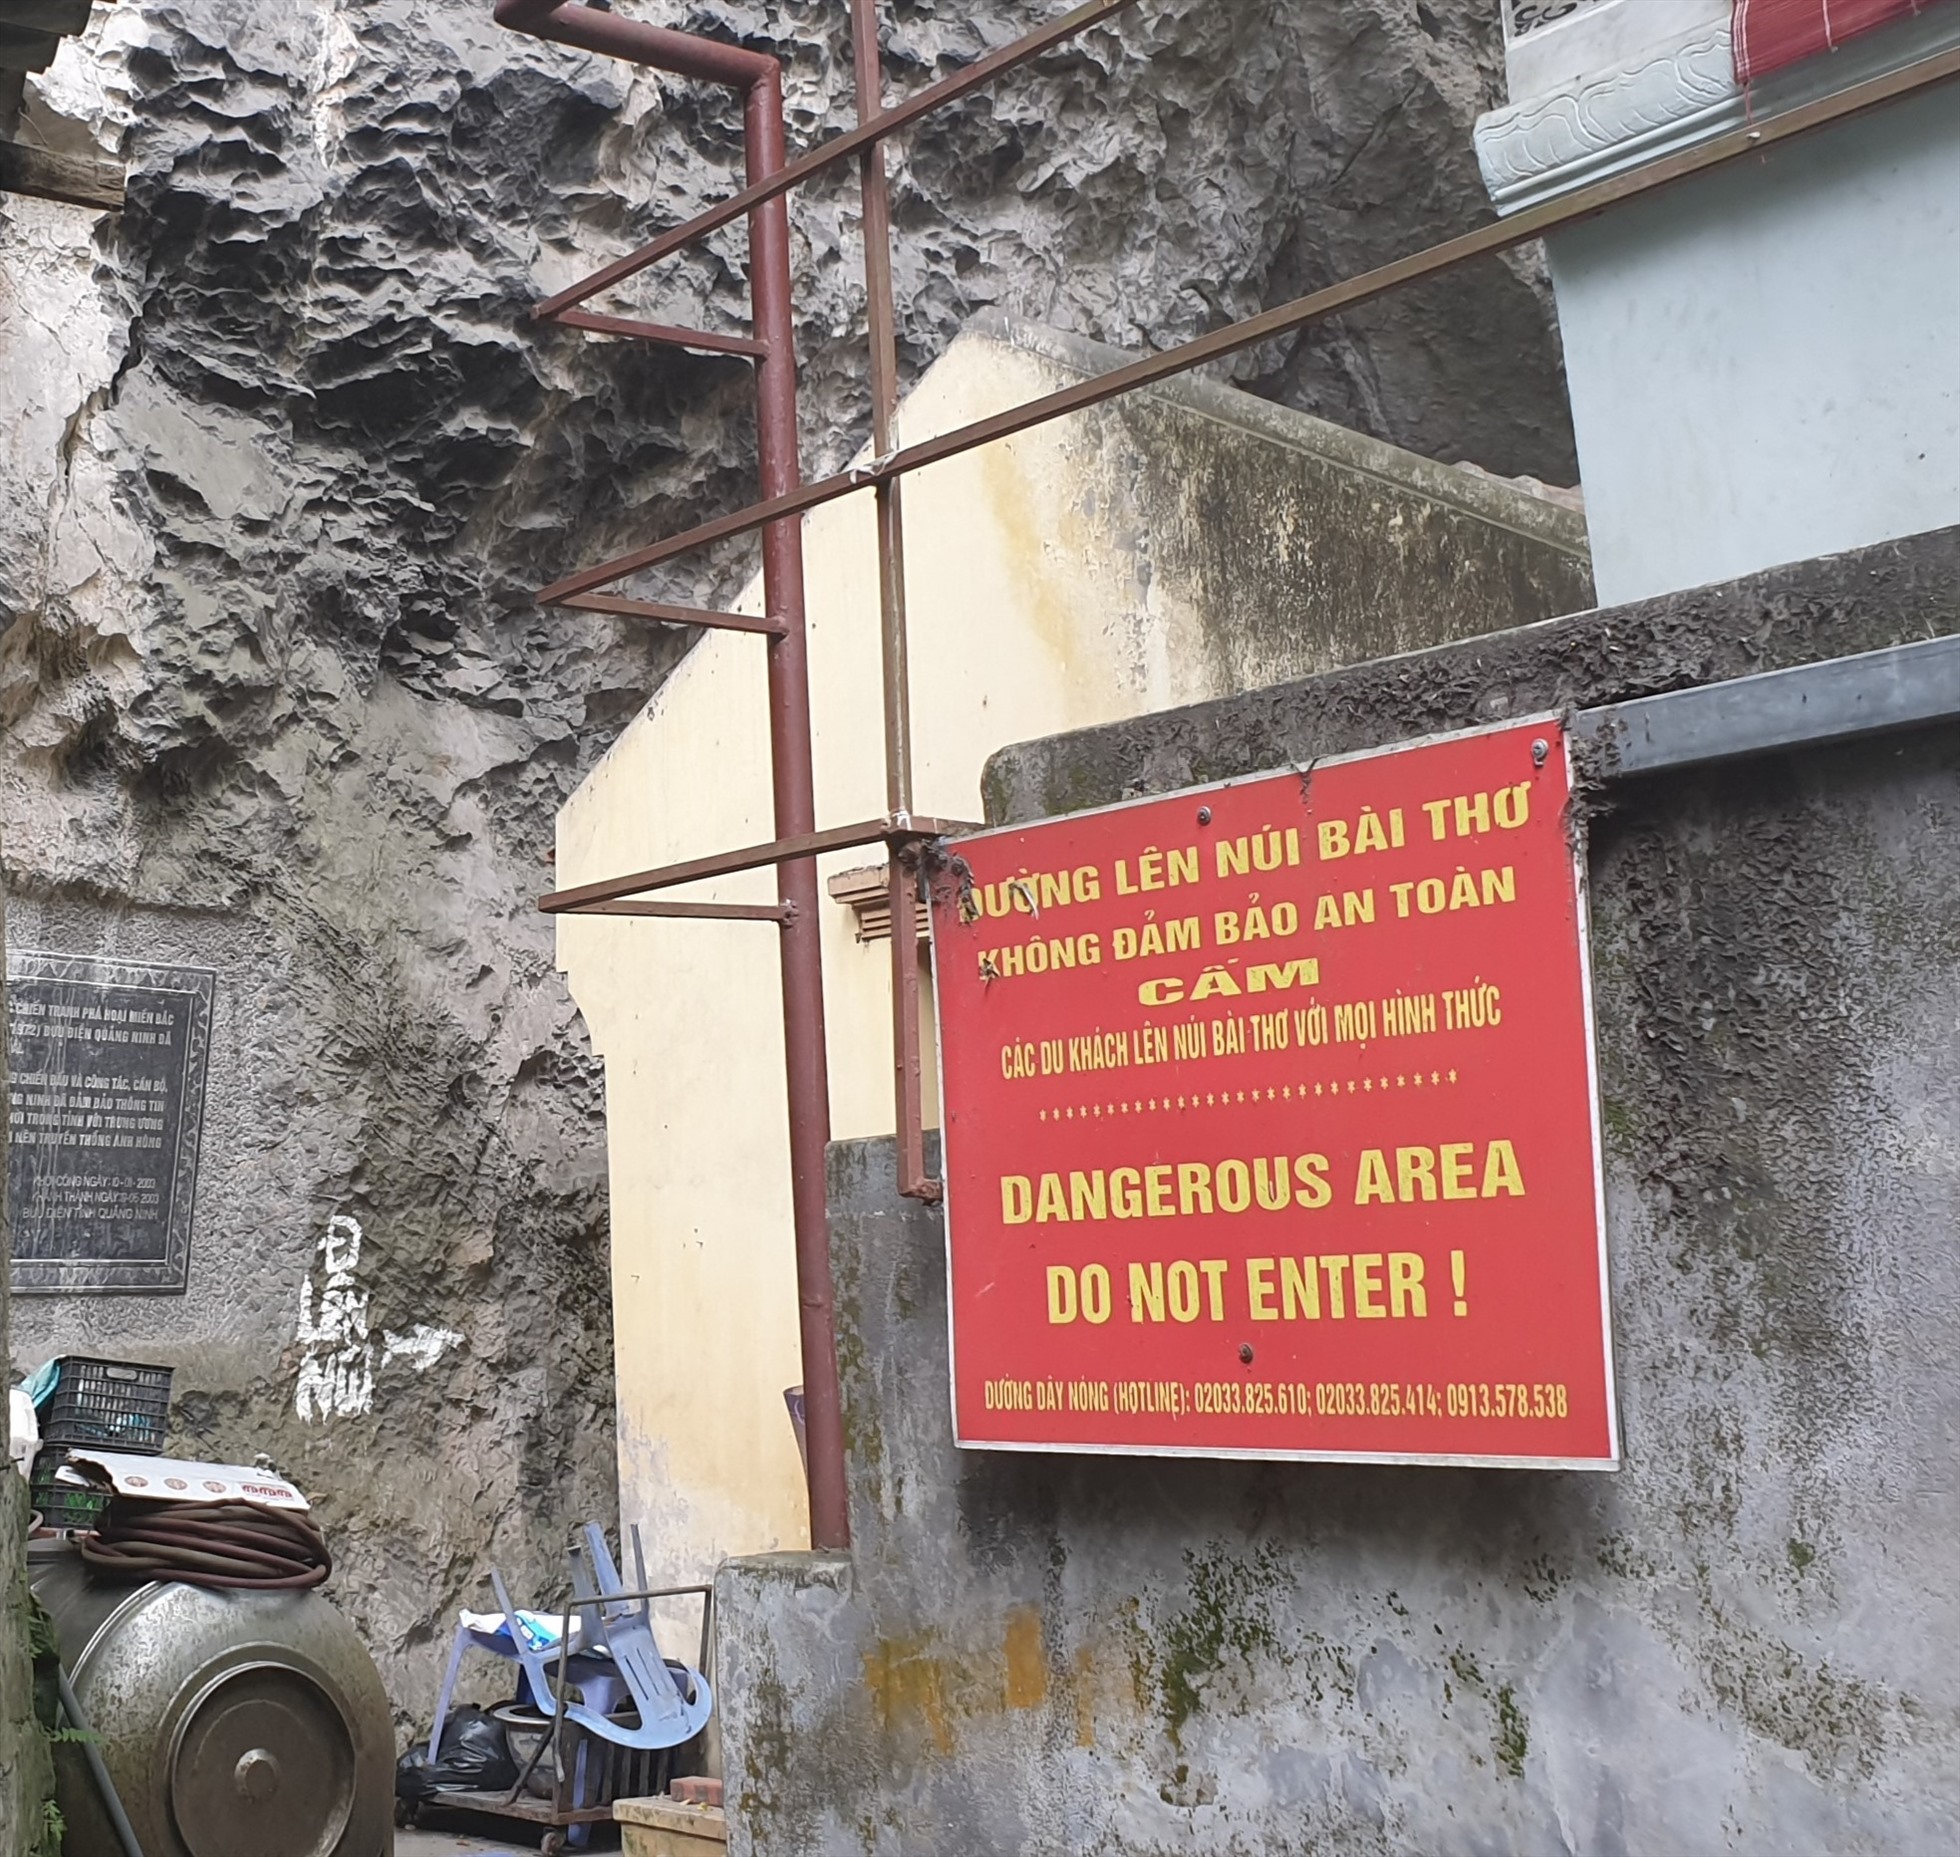 Sau vụ cháy tháng 11.2017, cổng lên núi Bài Thơ bị rào chắn cho đến hiện nay. Ảnh: Nguyễn Hùng